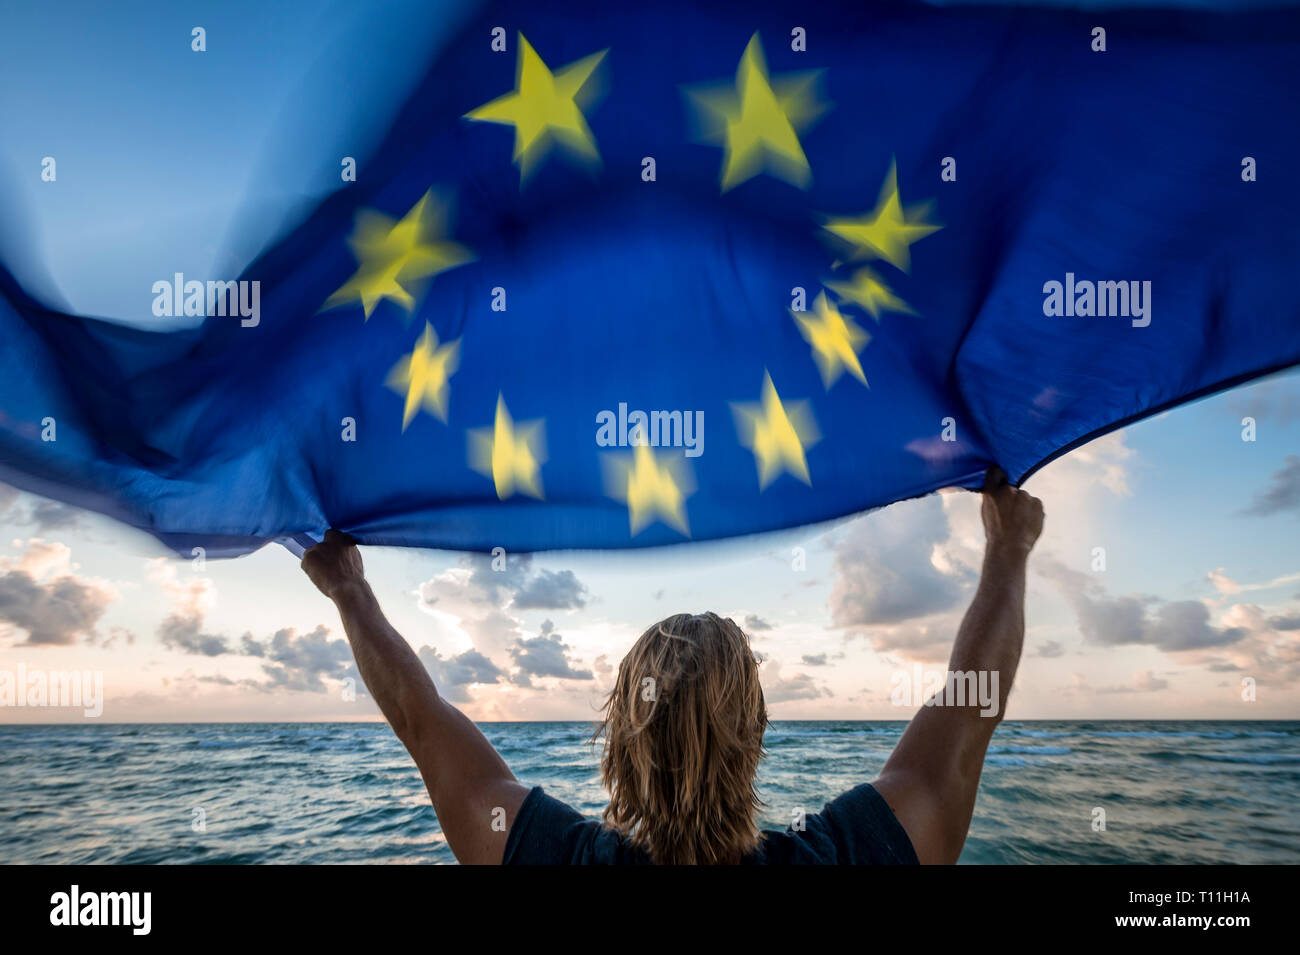 Scenic sunny view dell uomo con capelli biondi tenendo una bandiera dell'Unione Europea sventolare in forte motion blur al vento nella parte anteriore di un soft sunrise beach scene Foto Stock